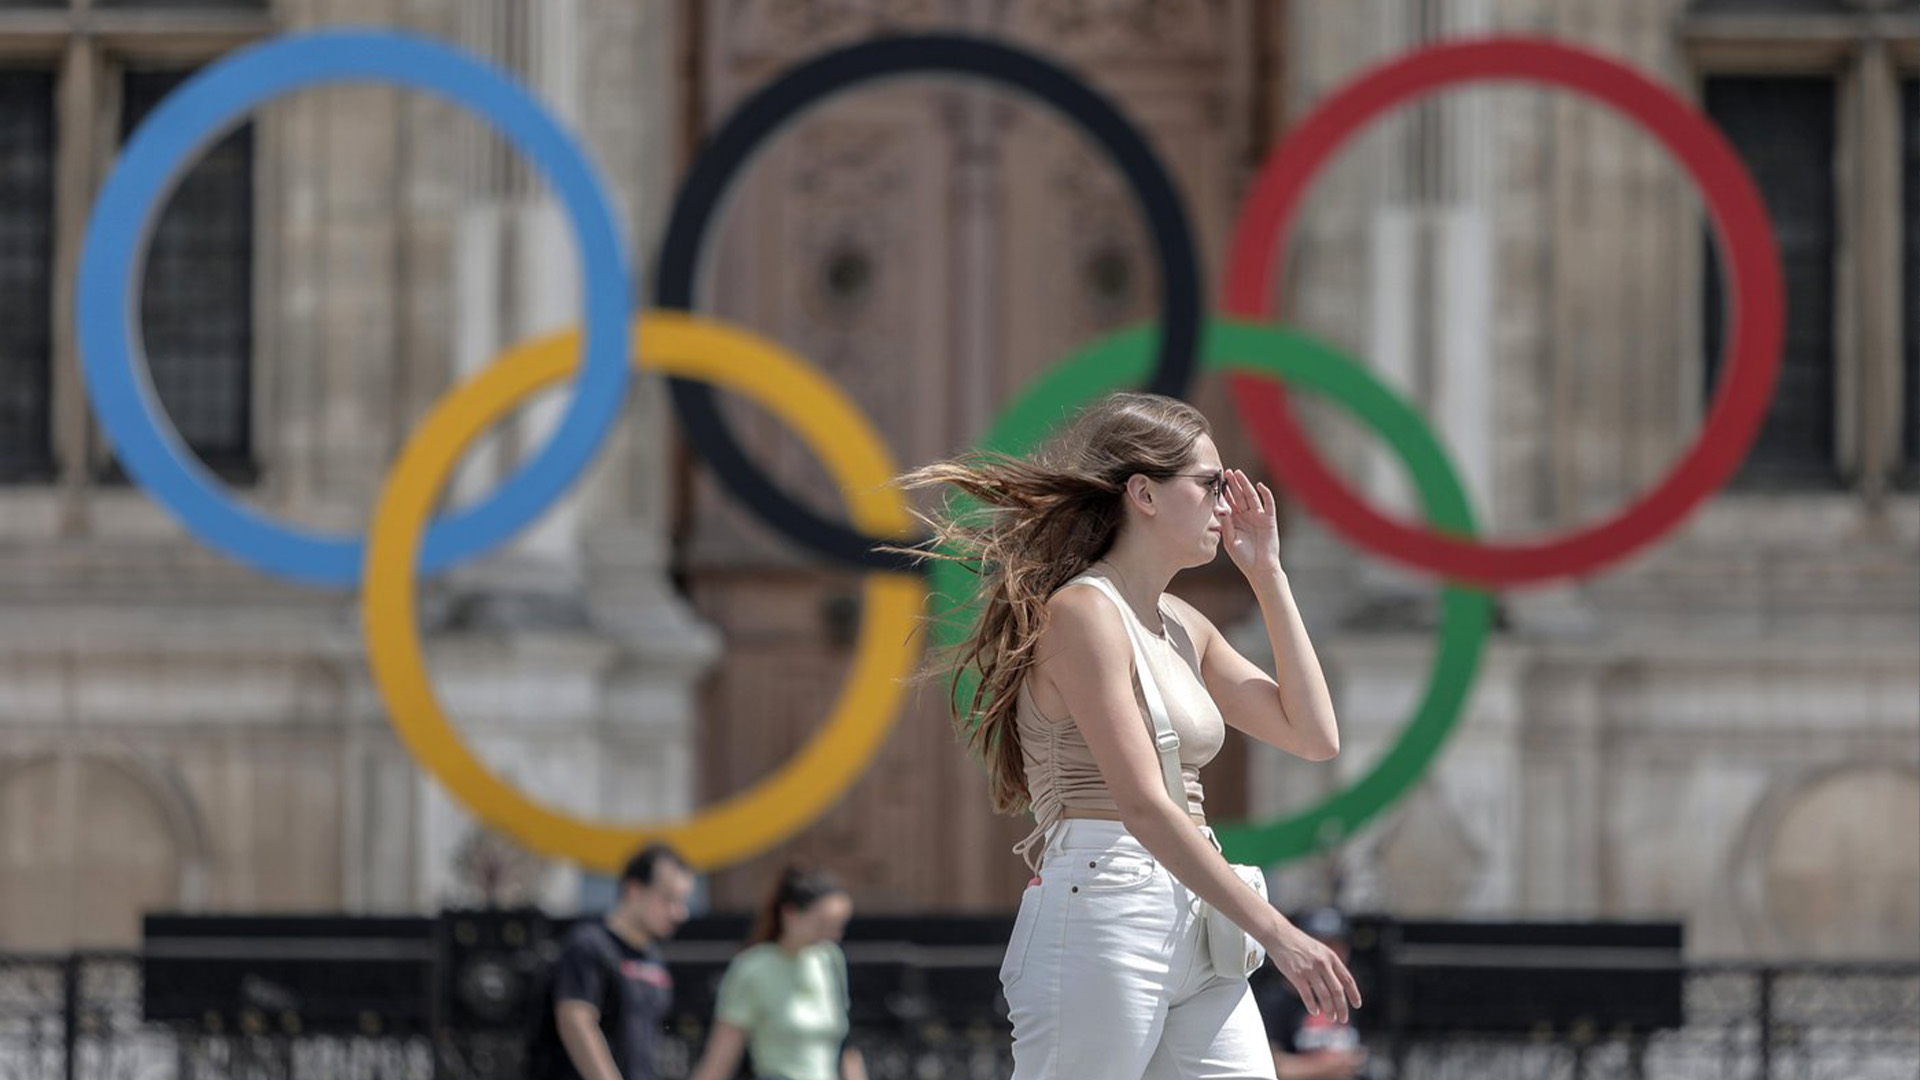 Une femme passe devant les anneaux olympiques à l'hôtel de ville de Paris, le 25 juillet 2022. La Lettonie menace de boycotter les Jeux olympiques de Paris l'année prochaine si les athlètes de Russie et de son allié biélorusse sont autorisés à participer après l'invasion de l'Ukraine par la Russie.